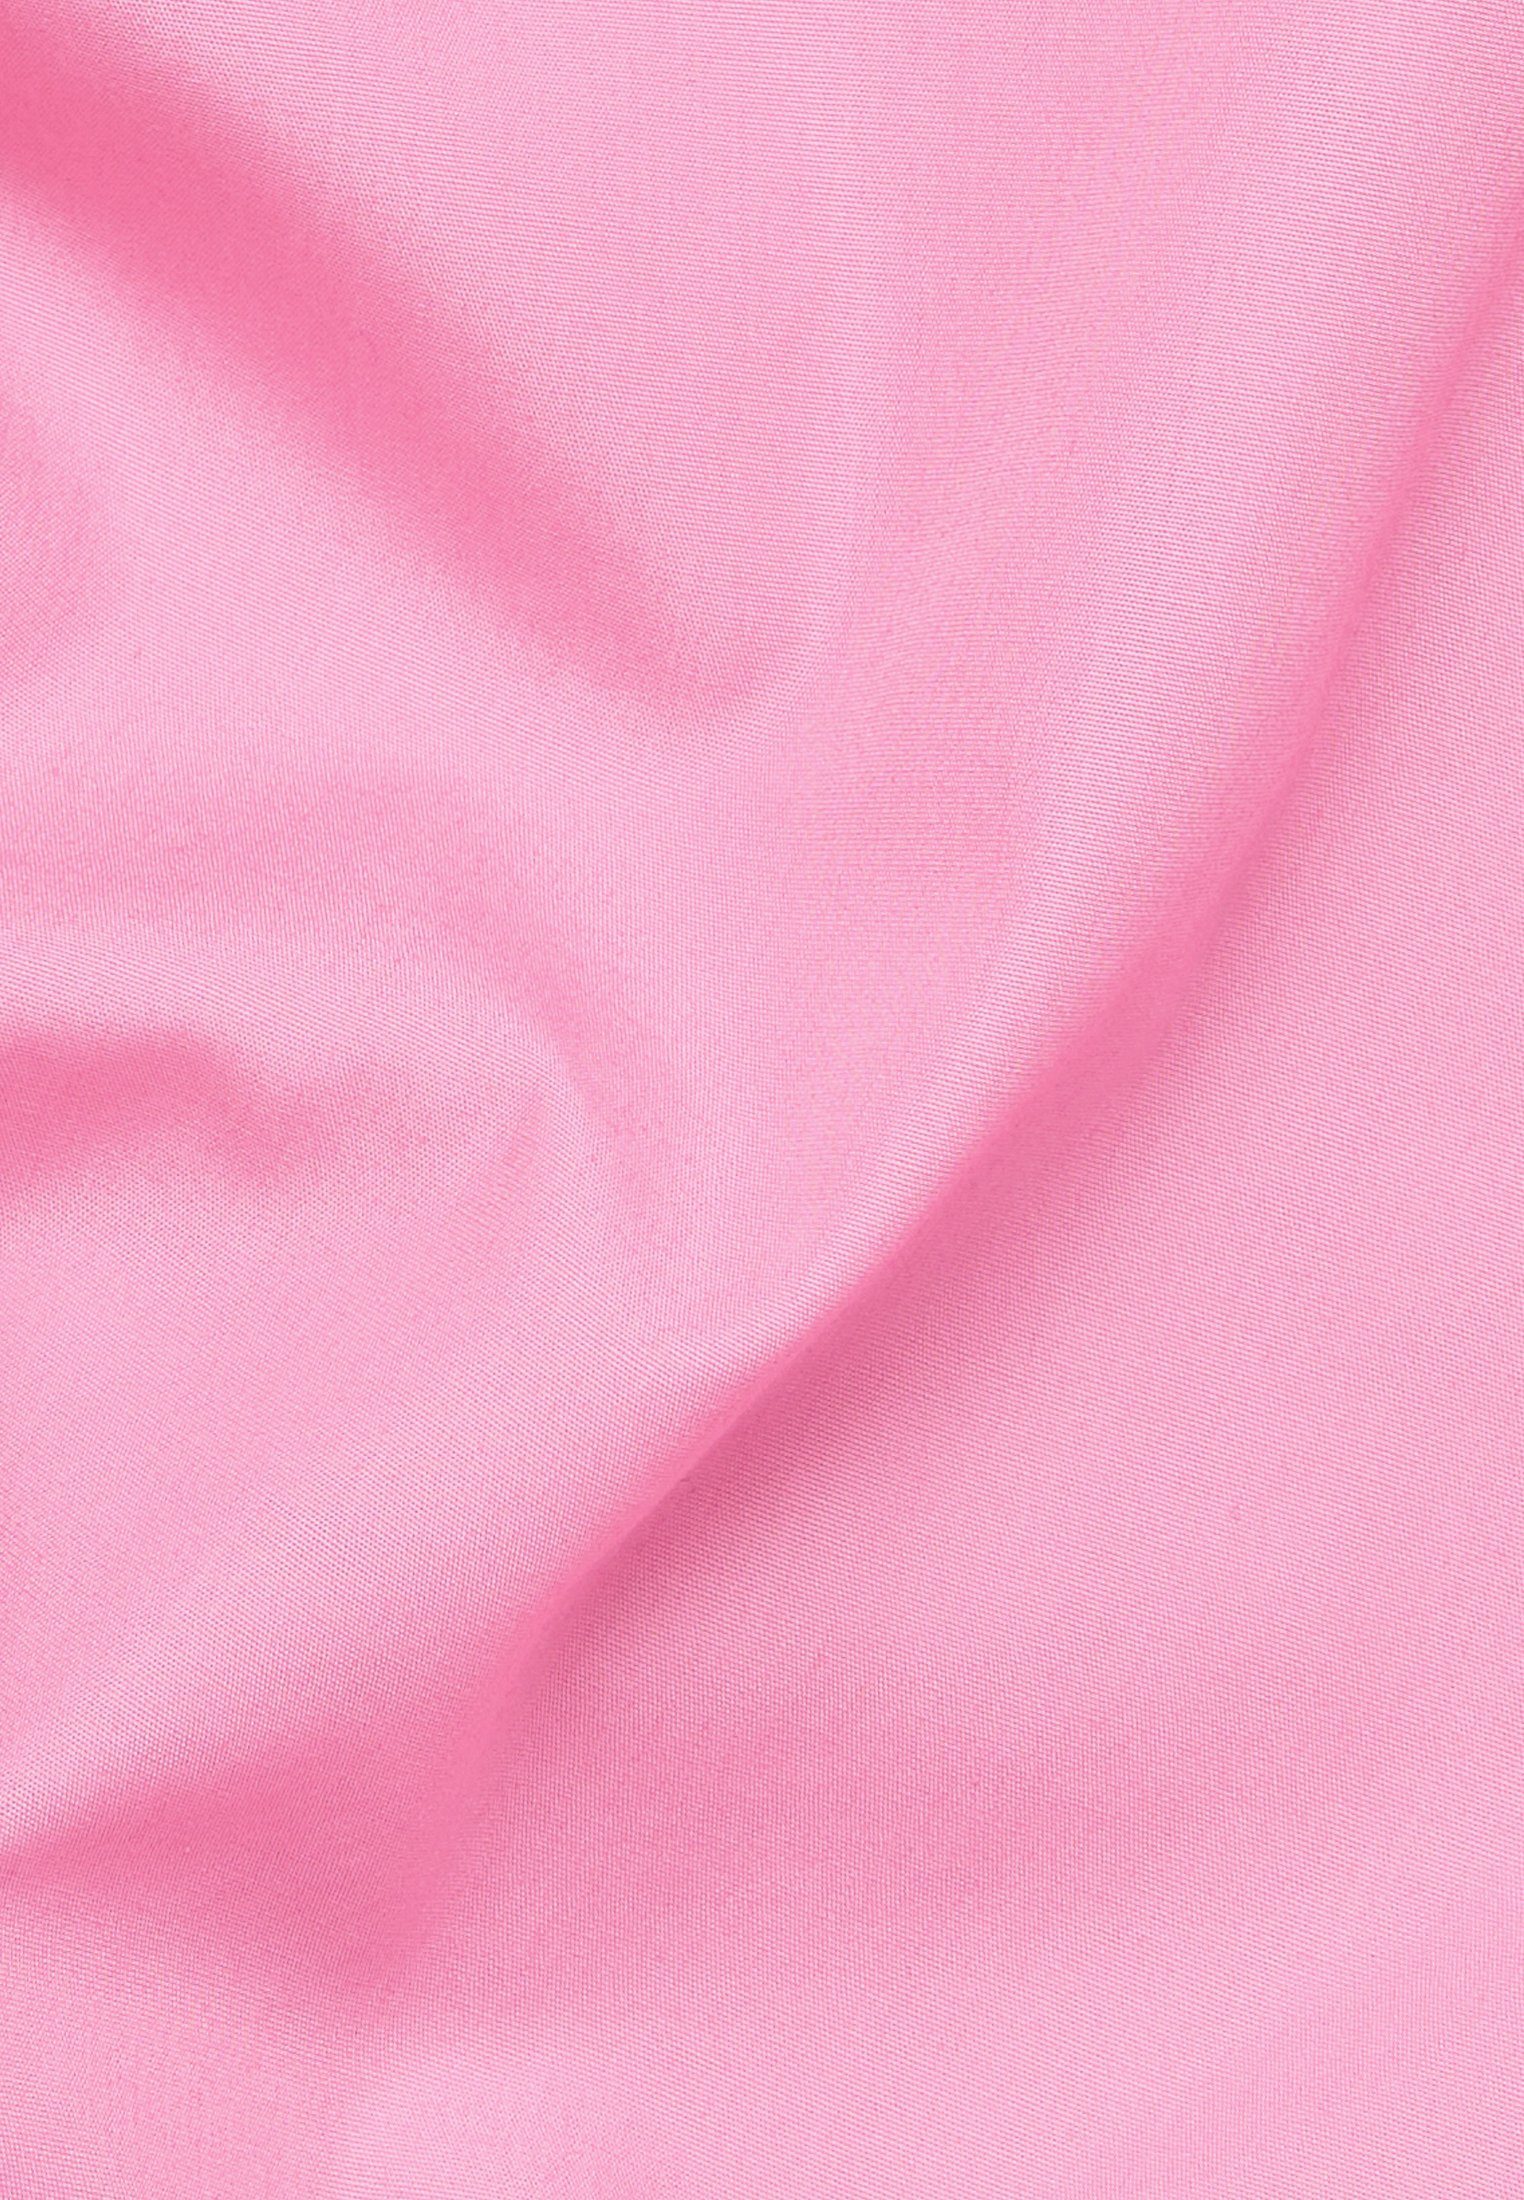 Eterna Shirtkleid LOOSE FIT pink